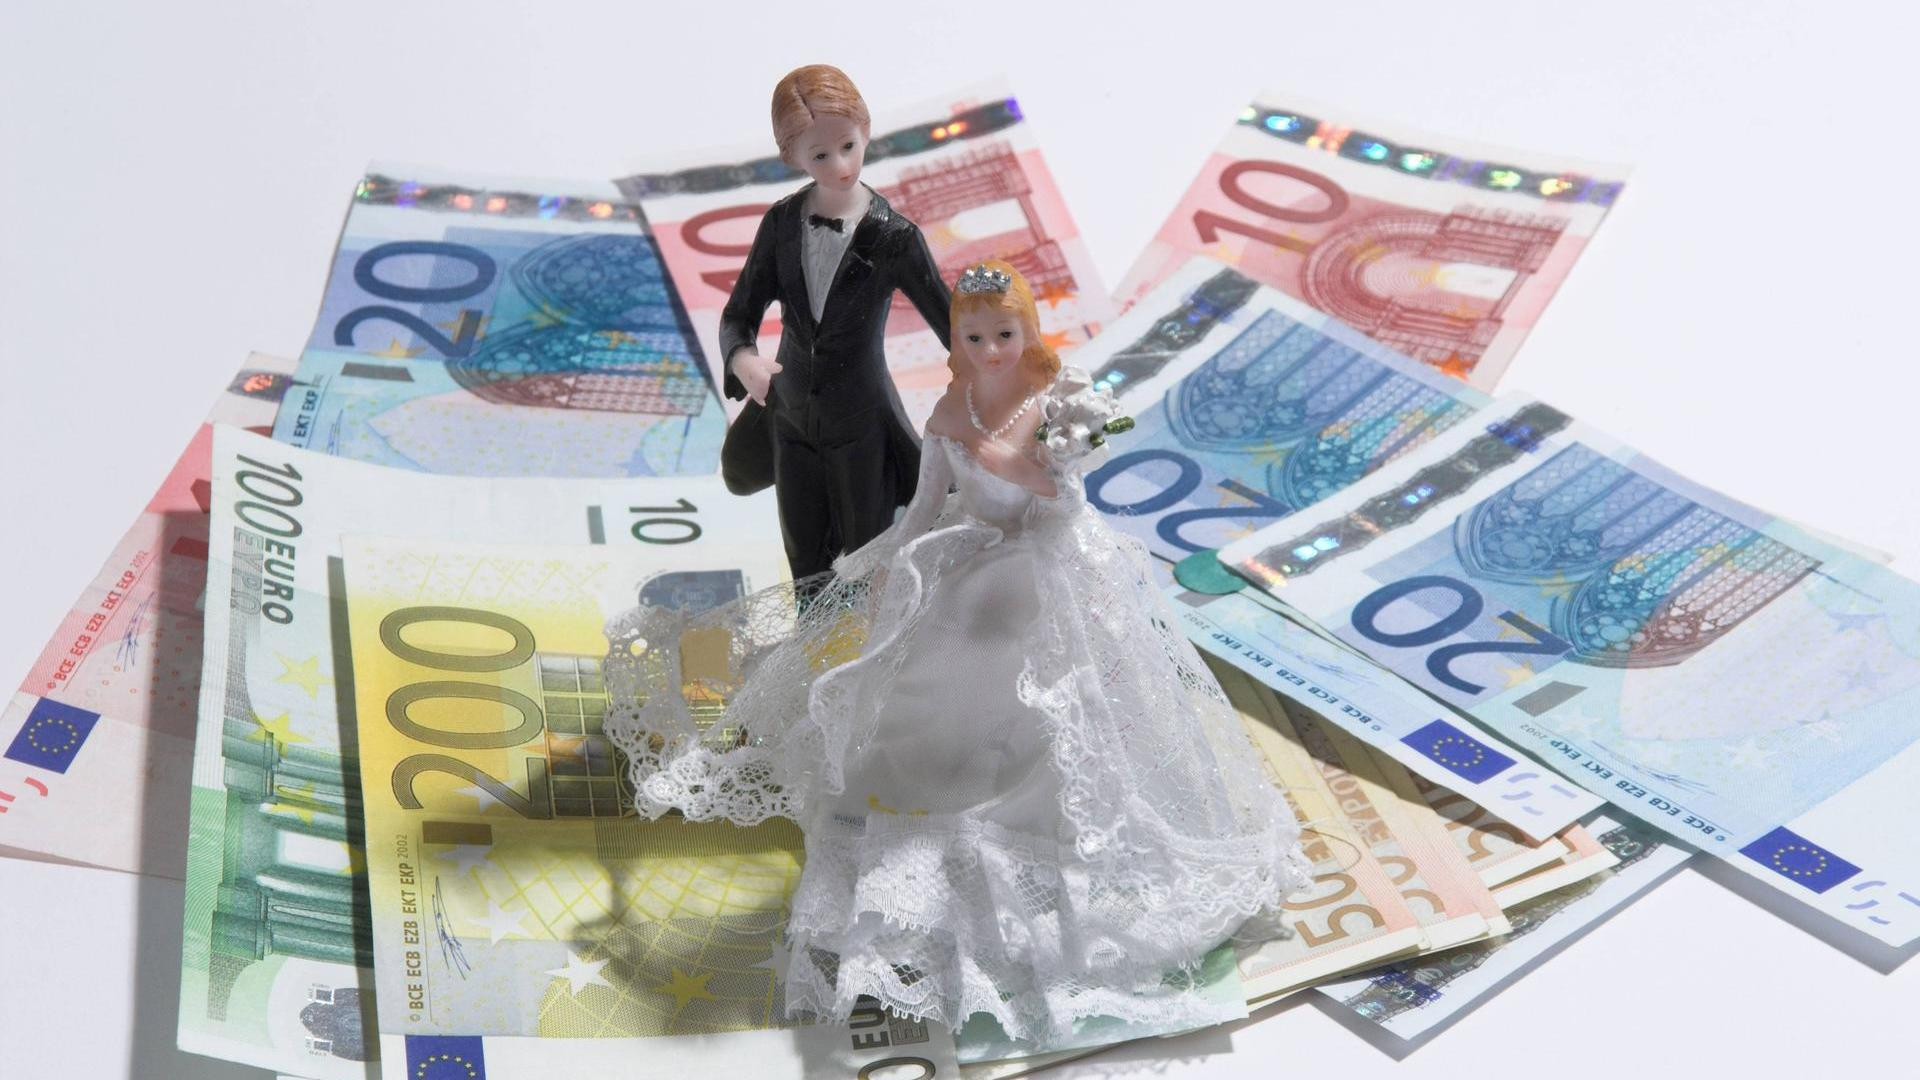 Ideen Geldgeschenke Hochzeit
 Geldgeschenke zur Hochzeit 5 kreative Ideen zum Verpacken